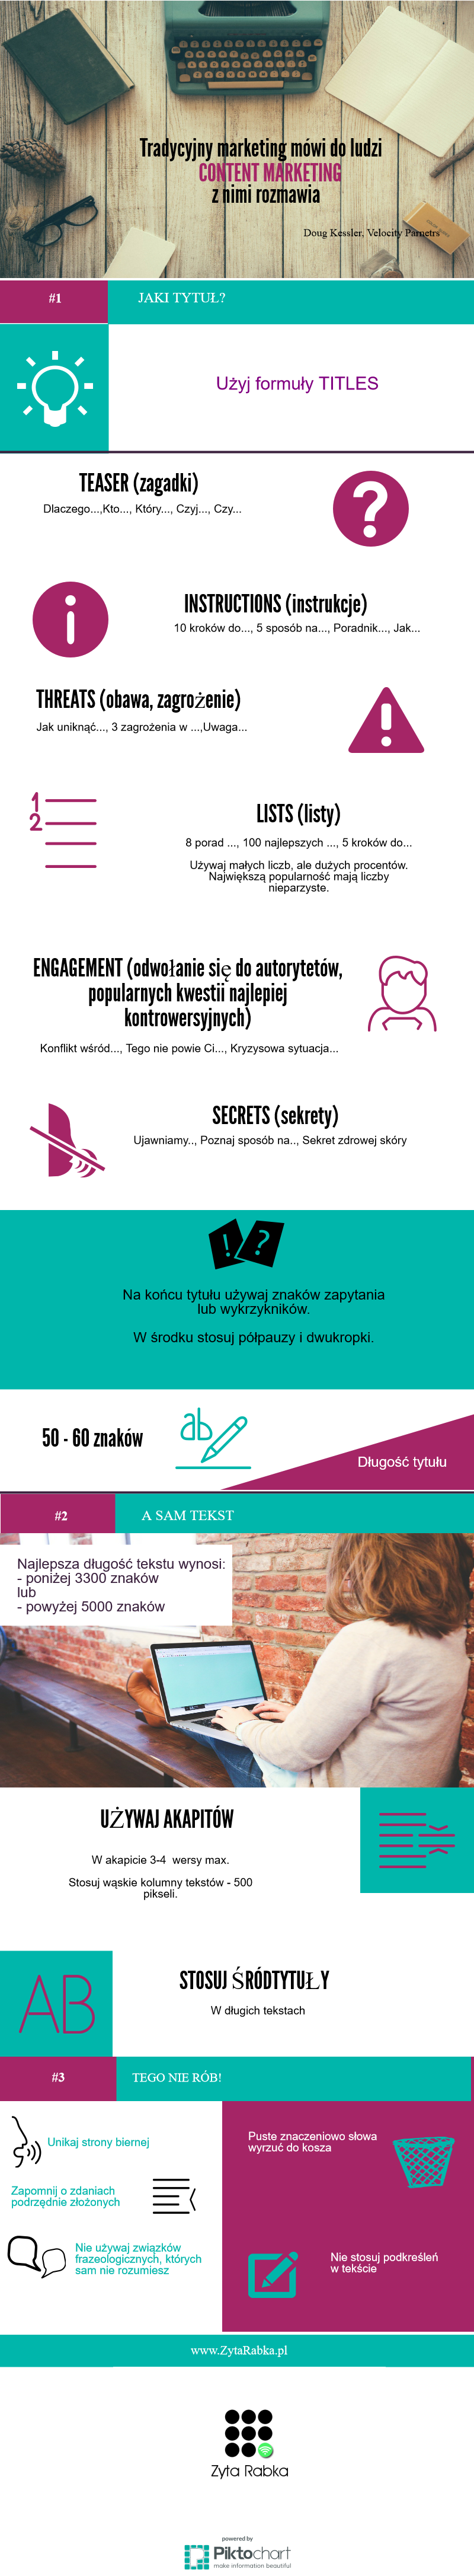 content-marketing-zytarabka.pl_1-tresc